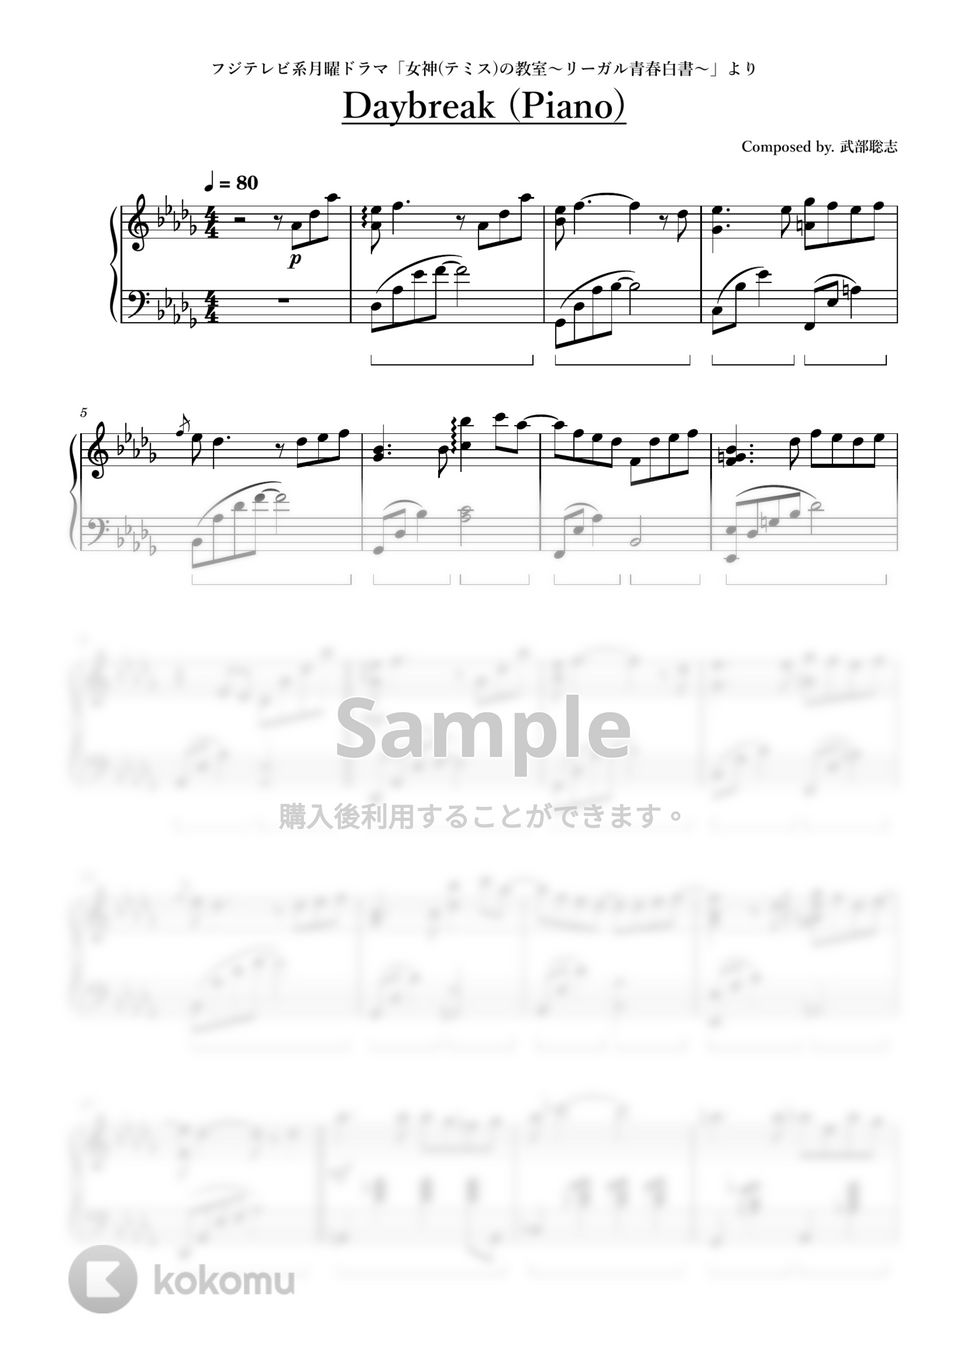 ドラマ「女神(テミス)の教室～リーガル青春白書～」より - Daybreak (Piano) by ちゃんRINA。